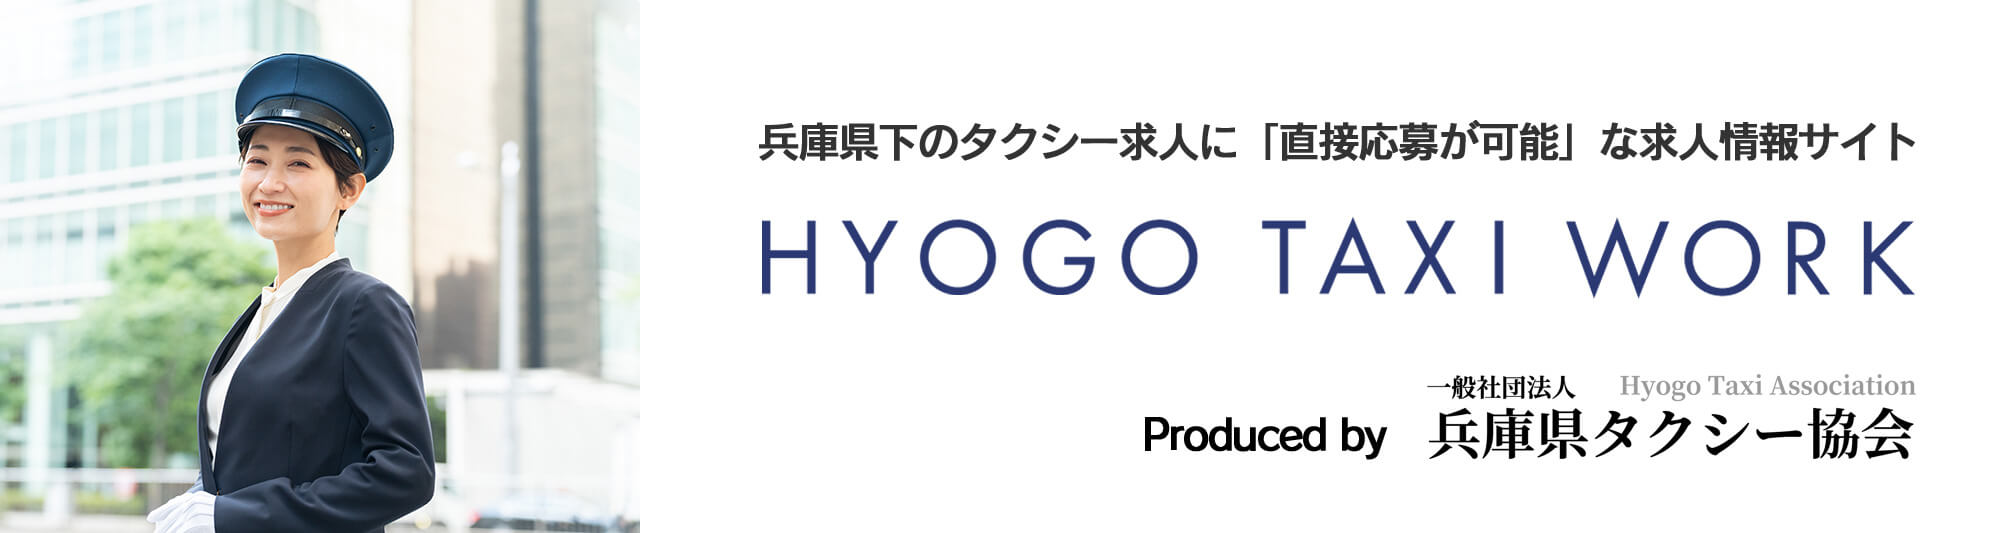 兵庫県下のタクシー求人に「直接応募が可能」な求人情報サイト HYOGO TAXI WORK